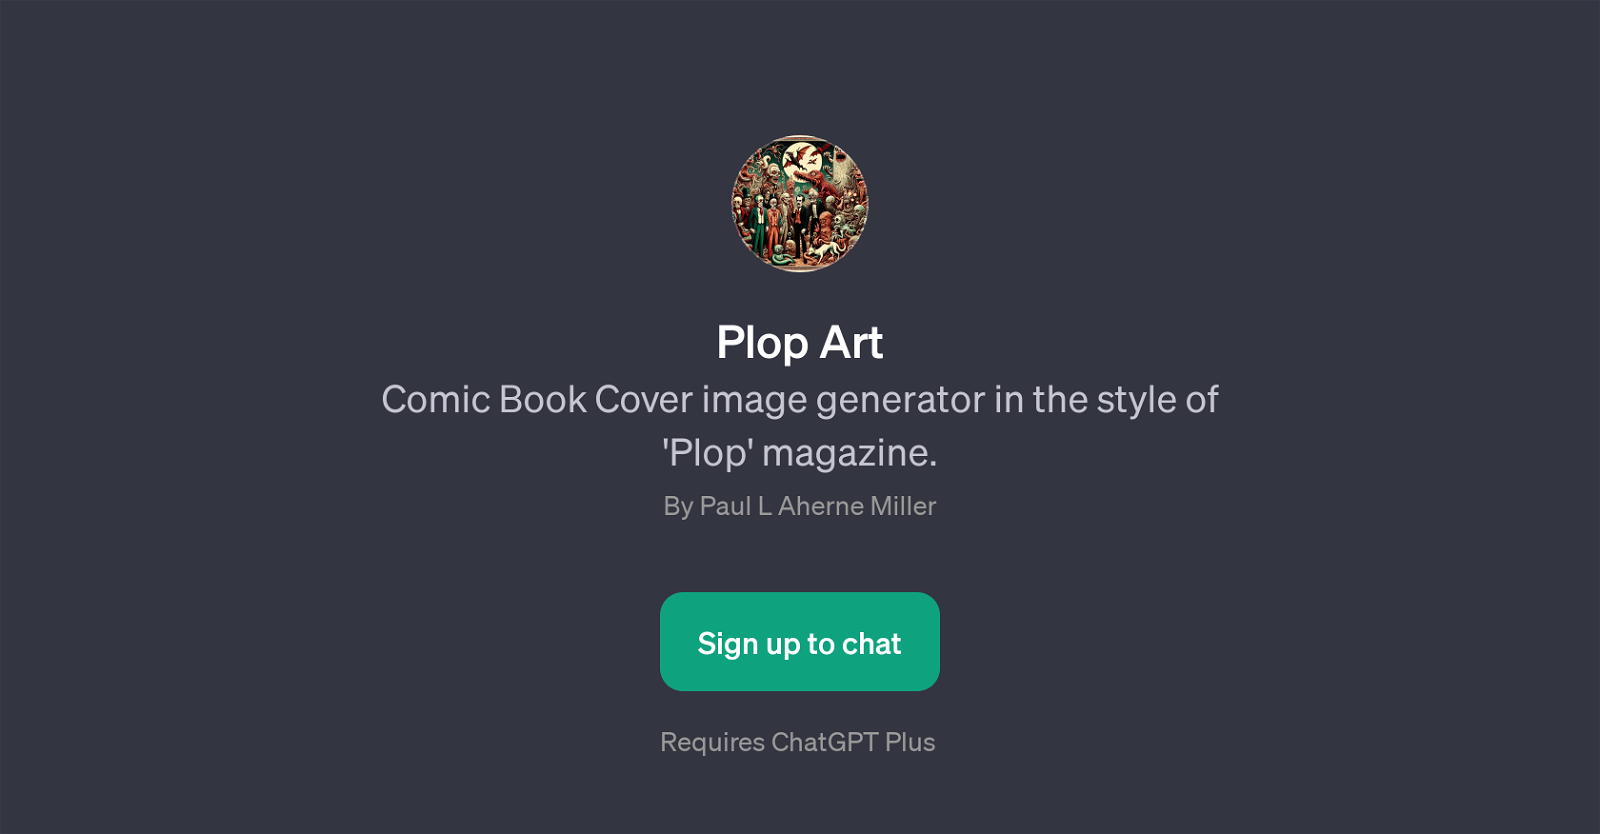 Plop Art website